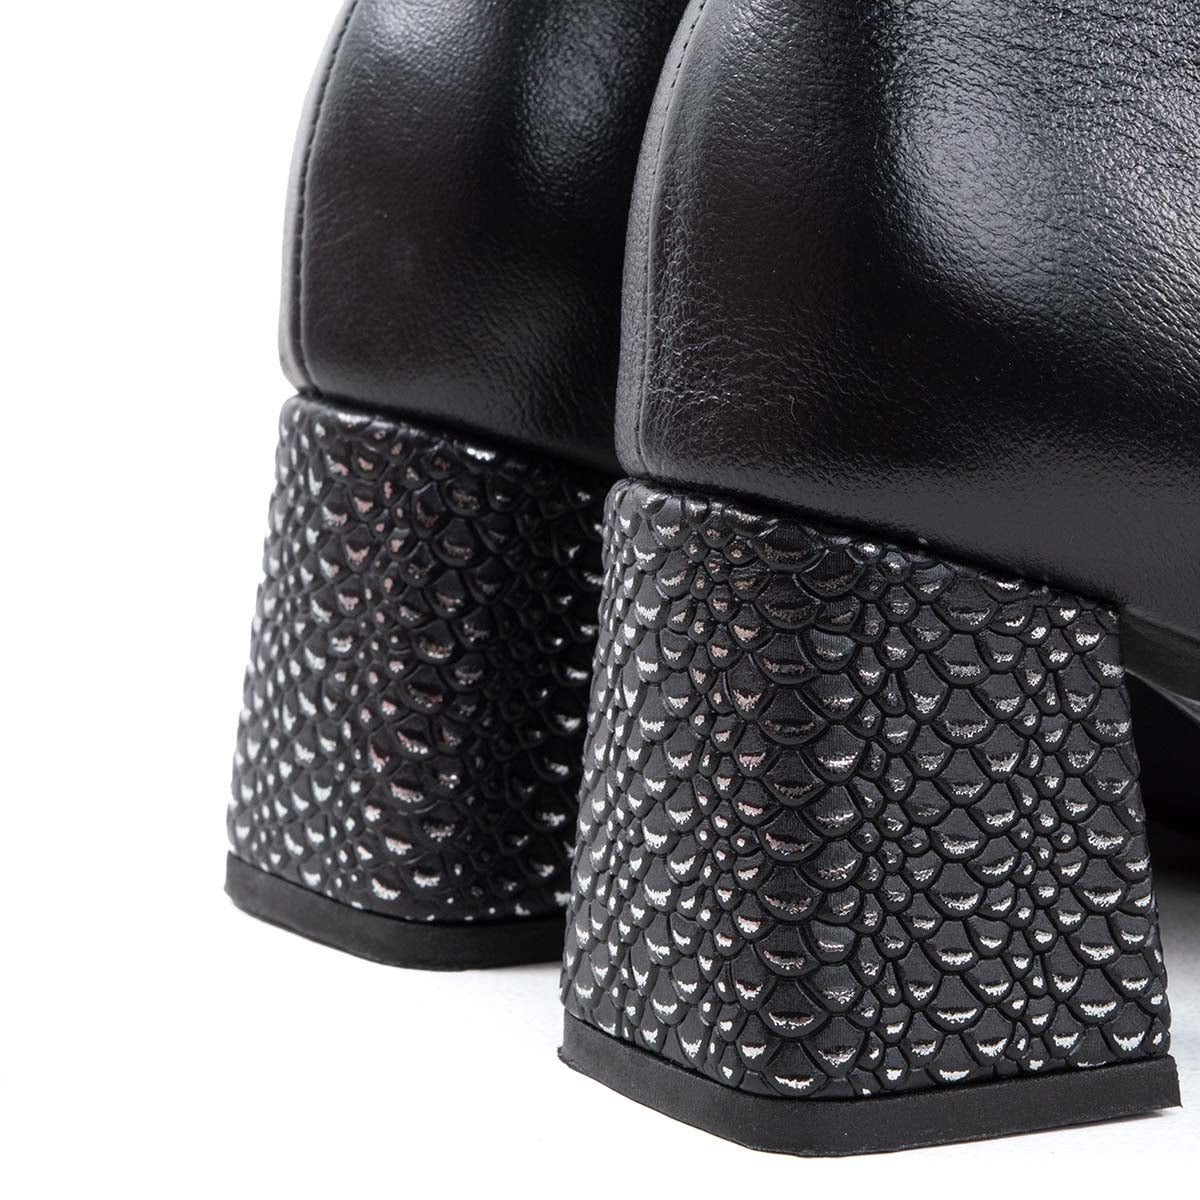 Botines de cuero color negro con texturizado metálico en tacón